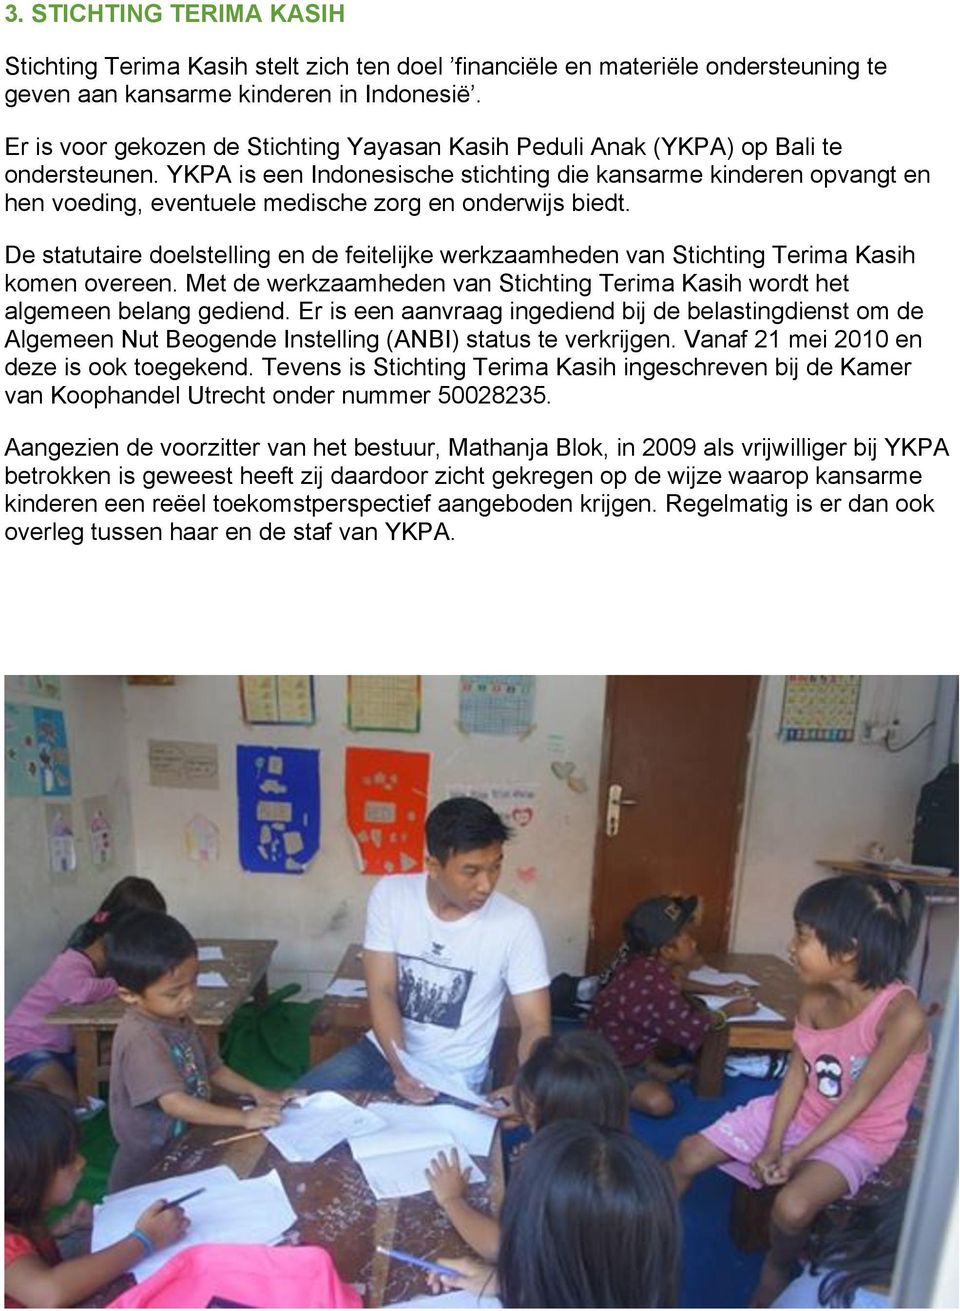 YKPA is een Indonesische stichting die kansarme kinderen opvangt en hen voeding, eventuele medische zorg en onderwijs biedt.